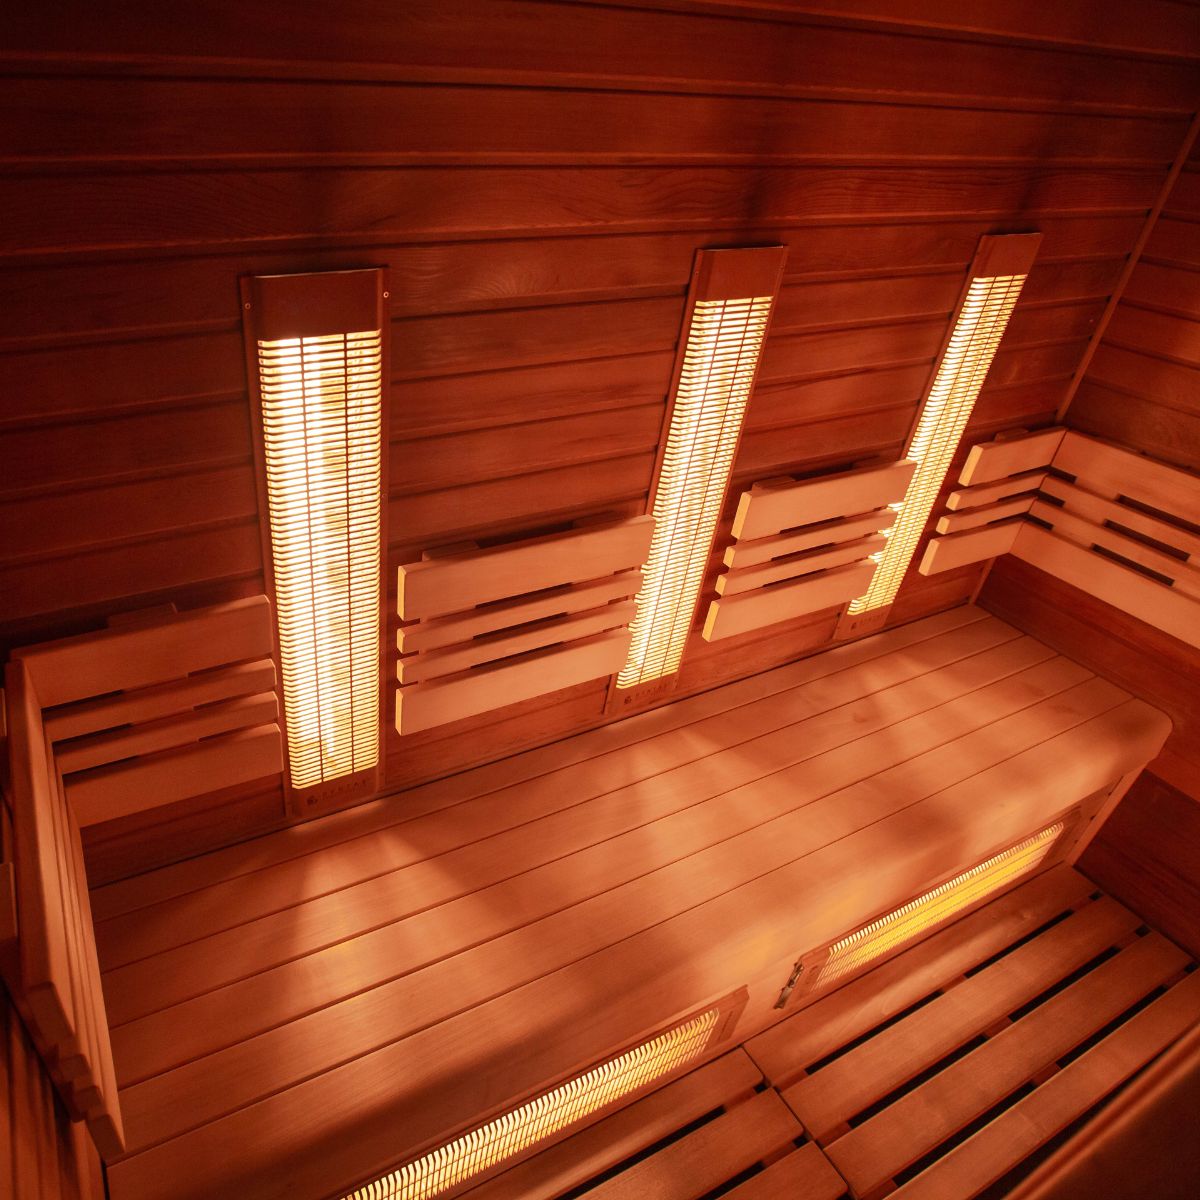 Wooden infrared sauna